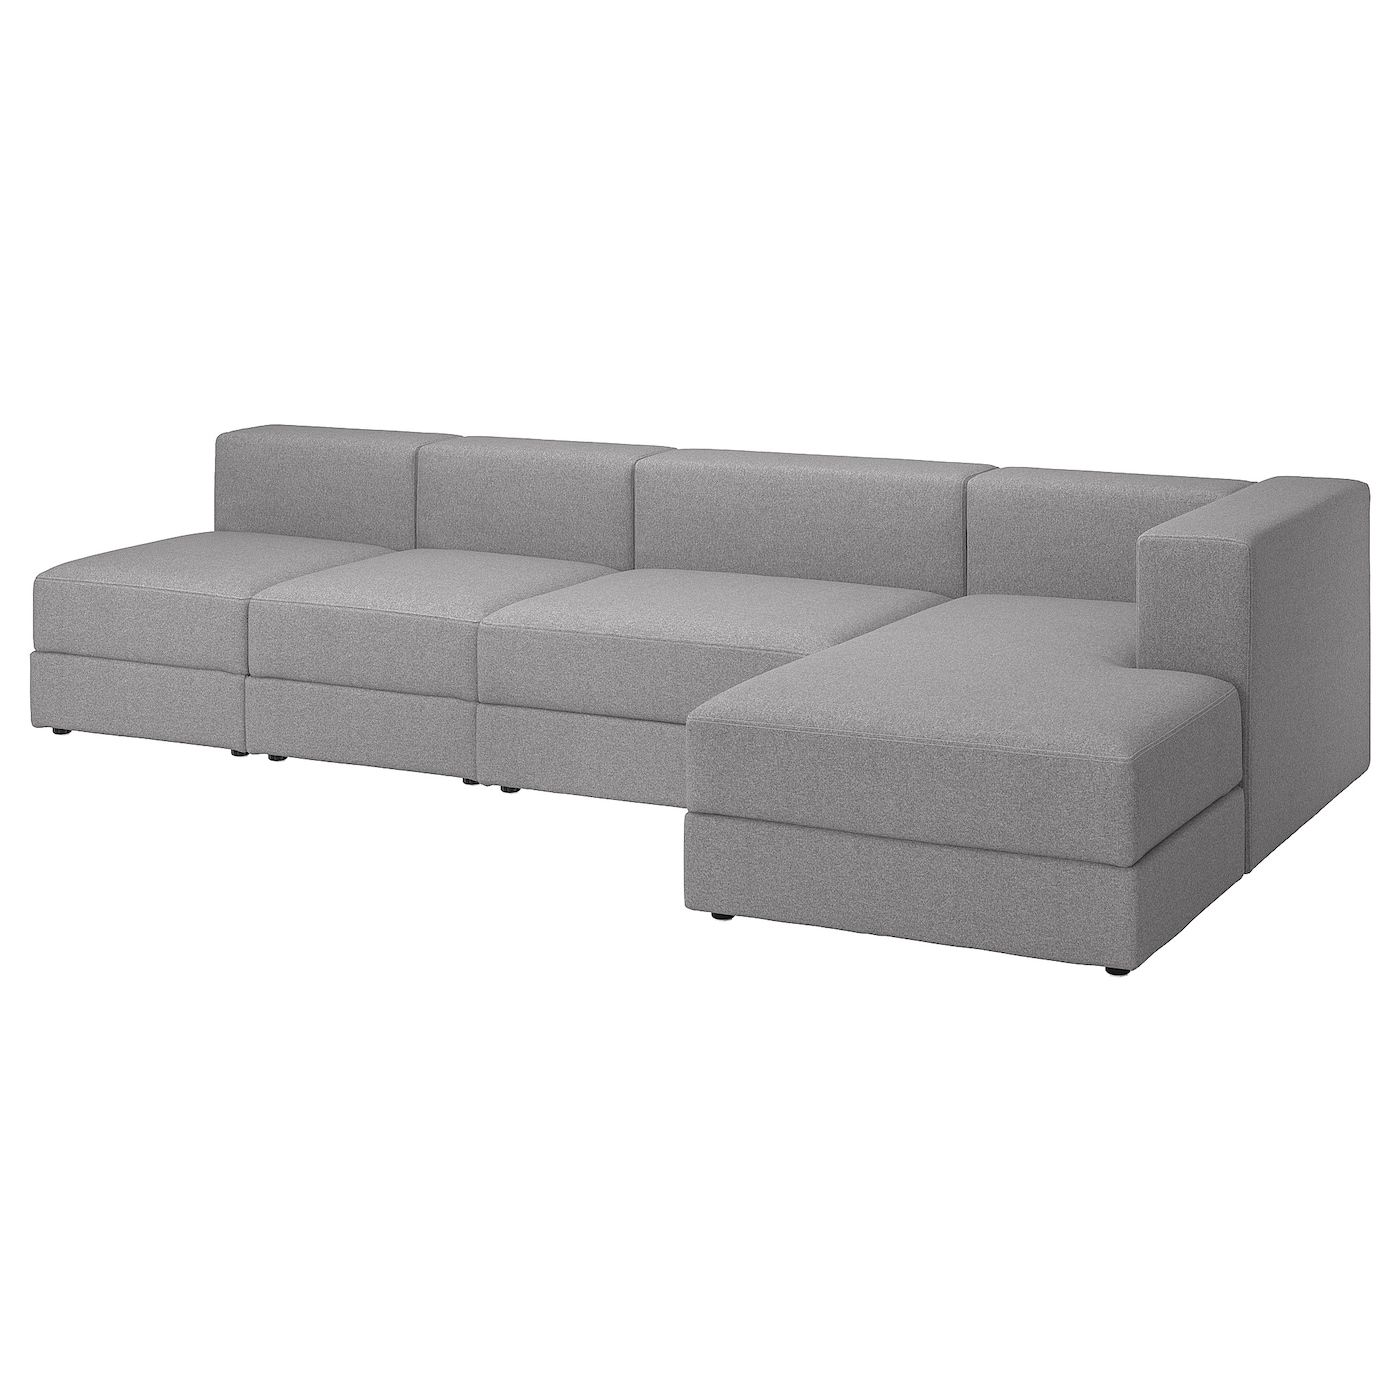 модульный диван ramart design мерсер премиум ultra ivory правый ДЖЭТТЕБО 5-местный диван + диван, правый/Тонеруд серый JÄTTEBO IKEA